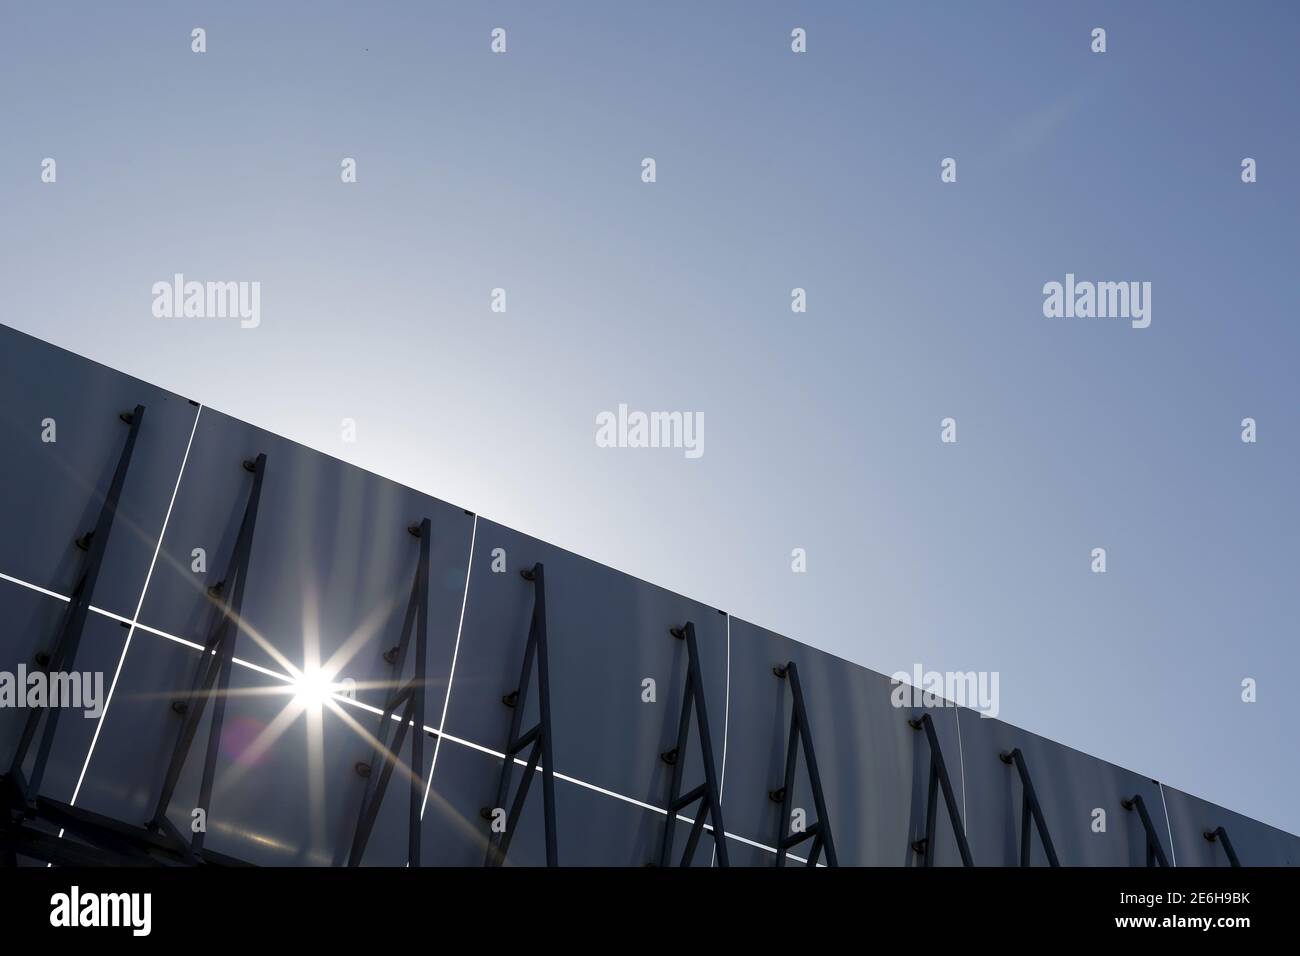 Die Sonne scheint durch Reflektorpaneele einer Solarkollektoranlage im  Solarkraftwerk Andasol bei Guadix, Südspanien 29. Juni 2015. Die Anlage ist  der größte Solarpark der Welt und versorgt bis zu 500,000 Menschen mit  Strom.